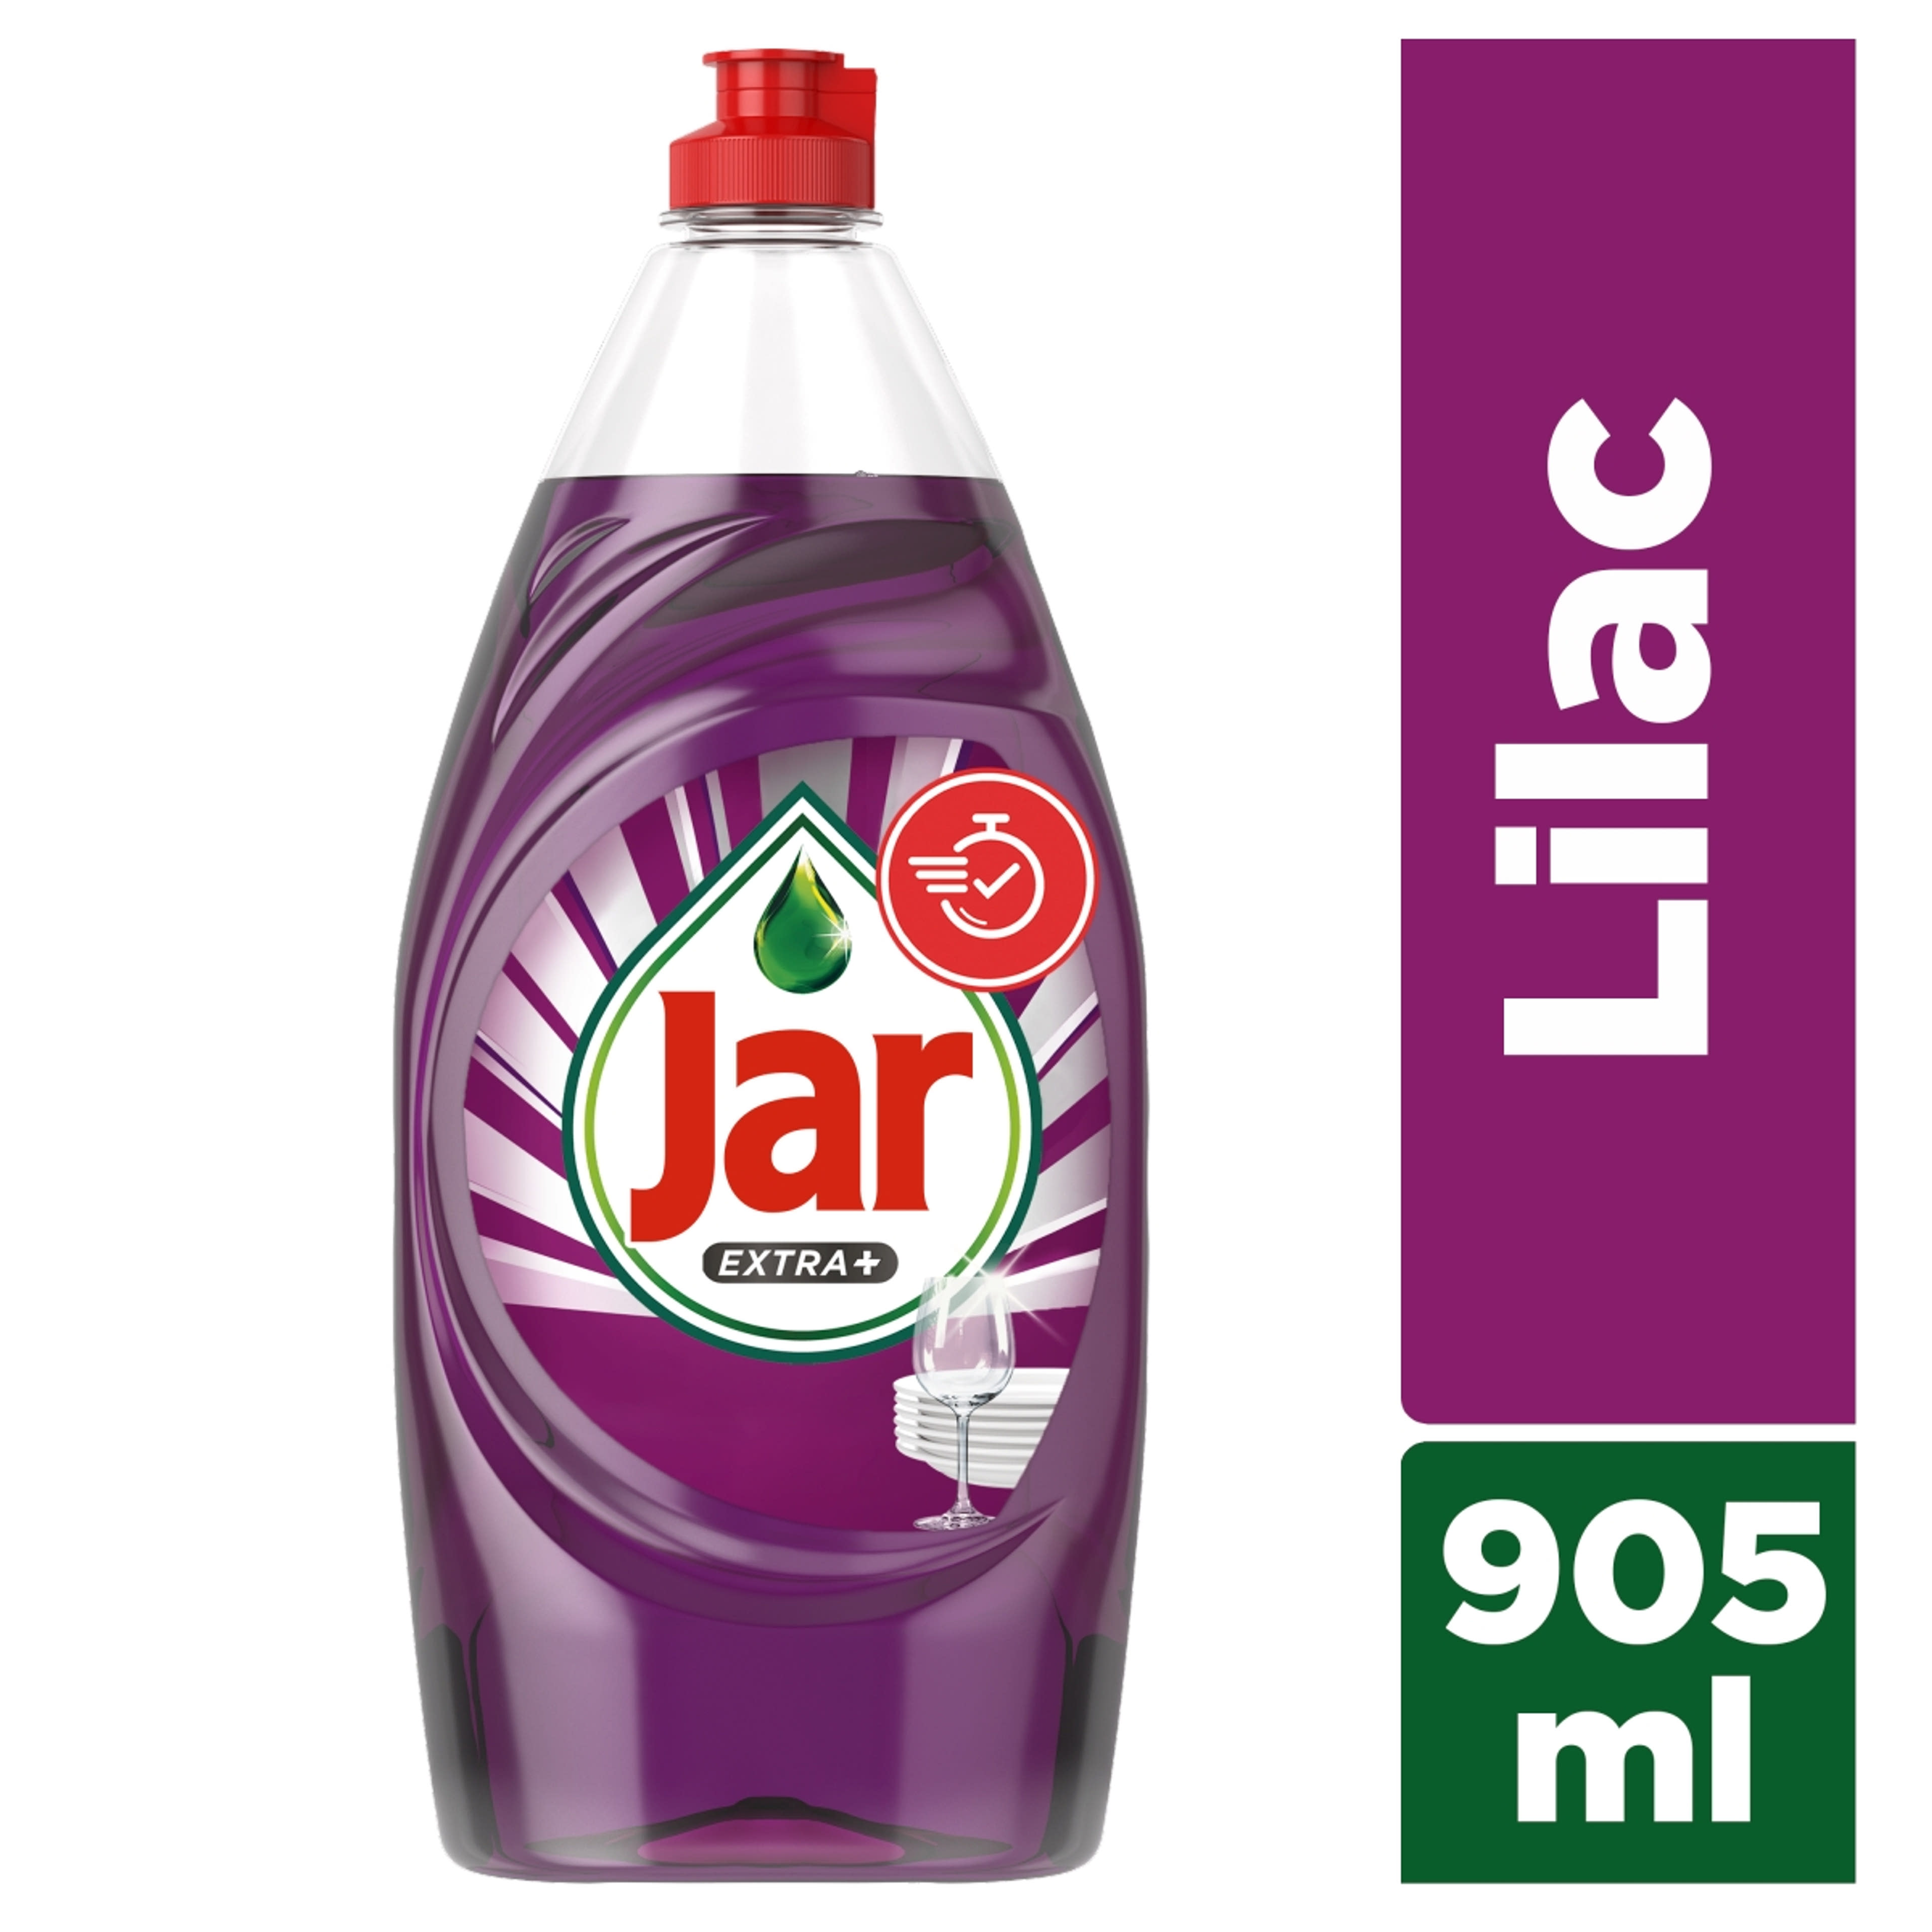 Jar Extra+ mosogatószer, orgona illattal - 905ml-2